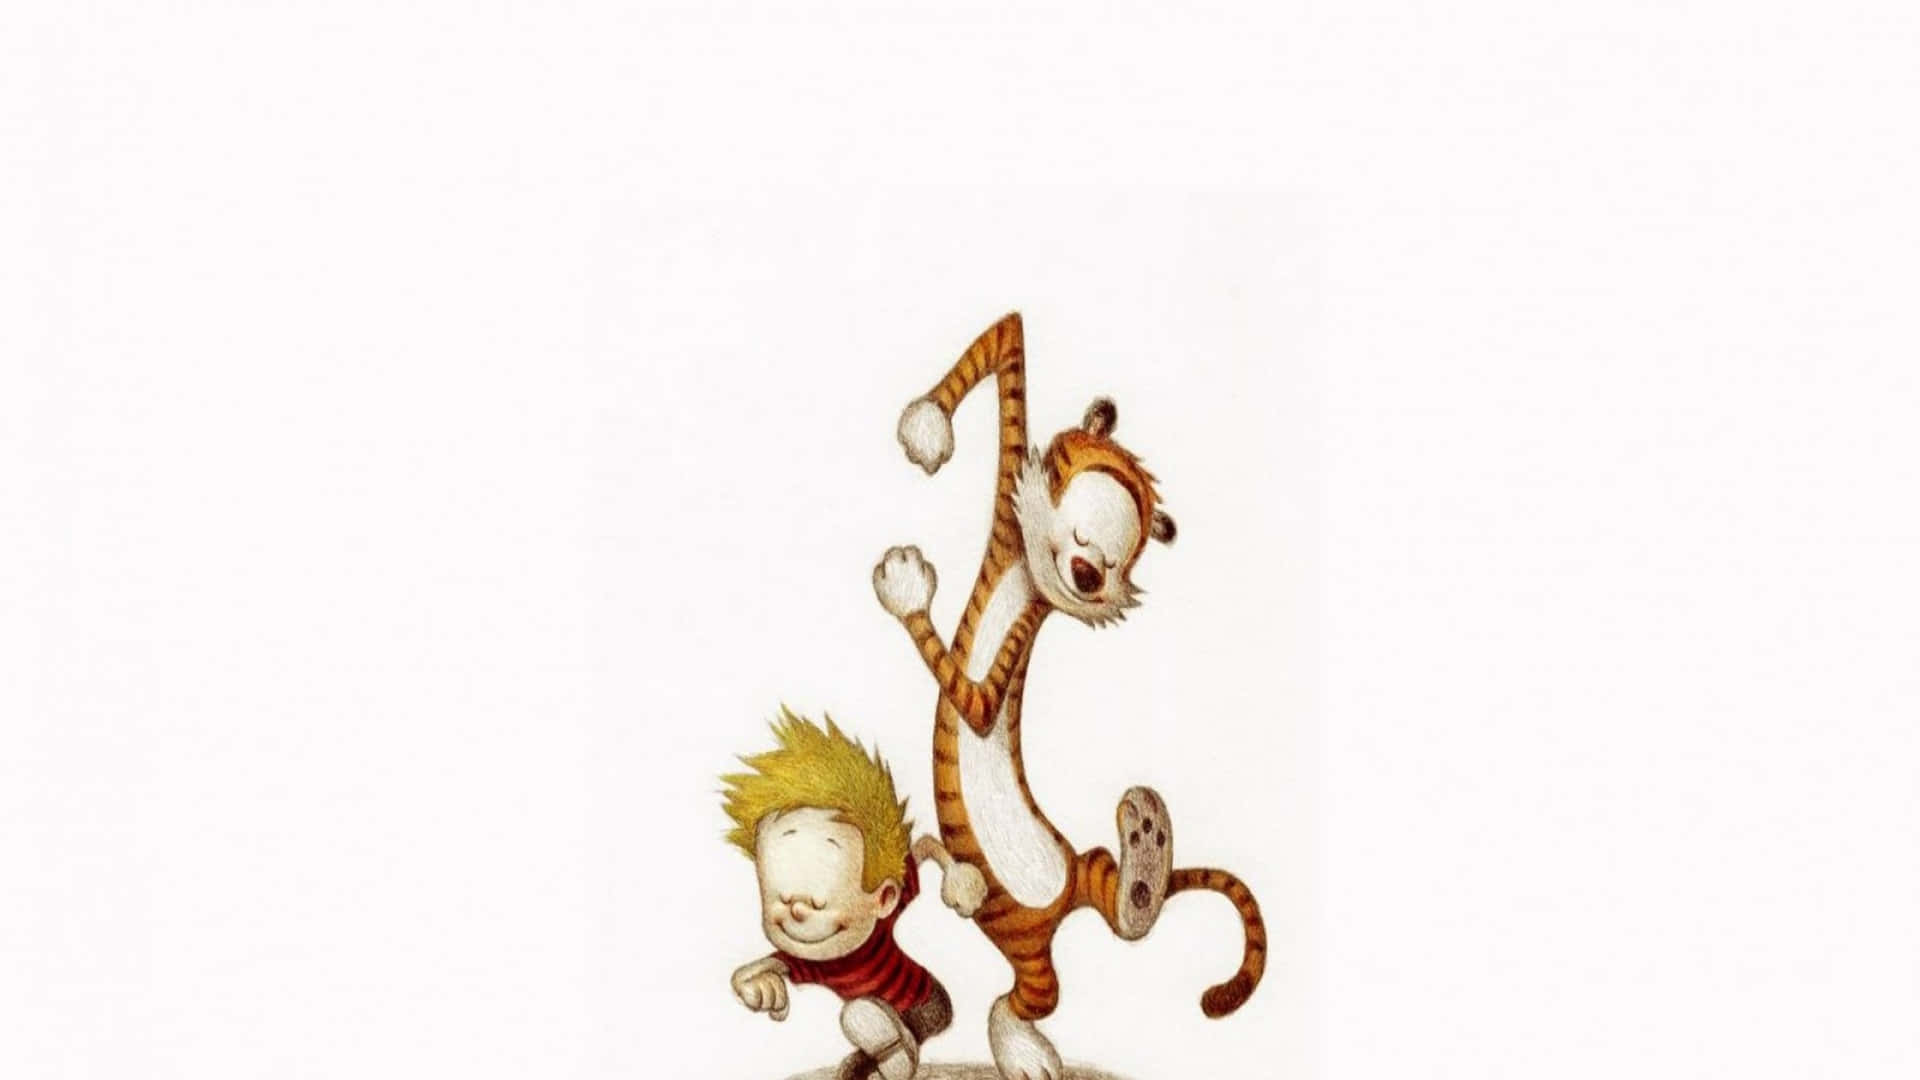 Det klassiske duoen Calvin og Hobbes, klar til deres næste eventyr. Wallpaper